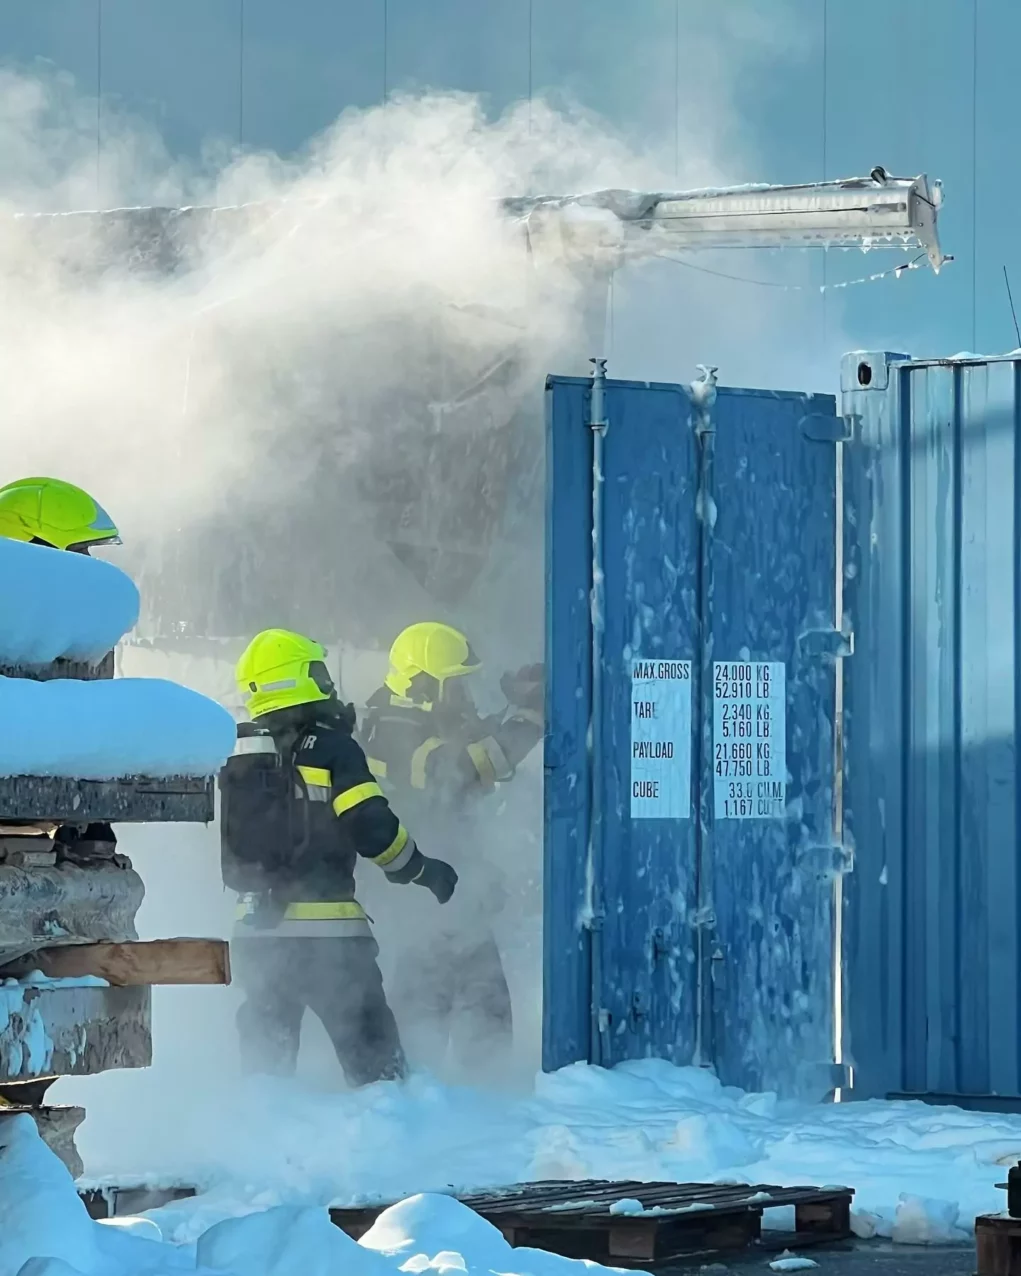 Foto in Beitrag von 5min.at: Zu sehen sind Feuerwehrler, die in einen Container schauen, aus dem es raucht.